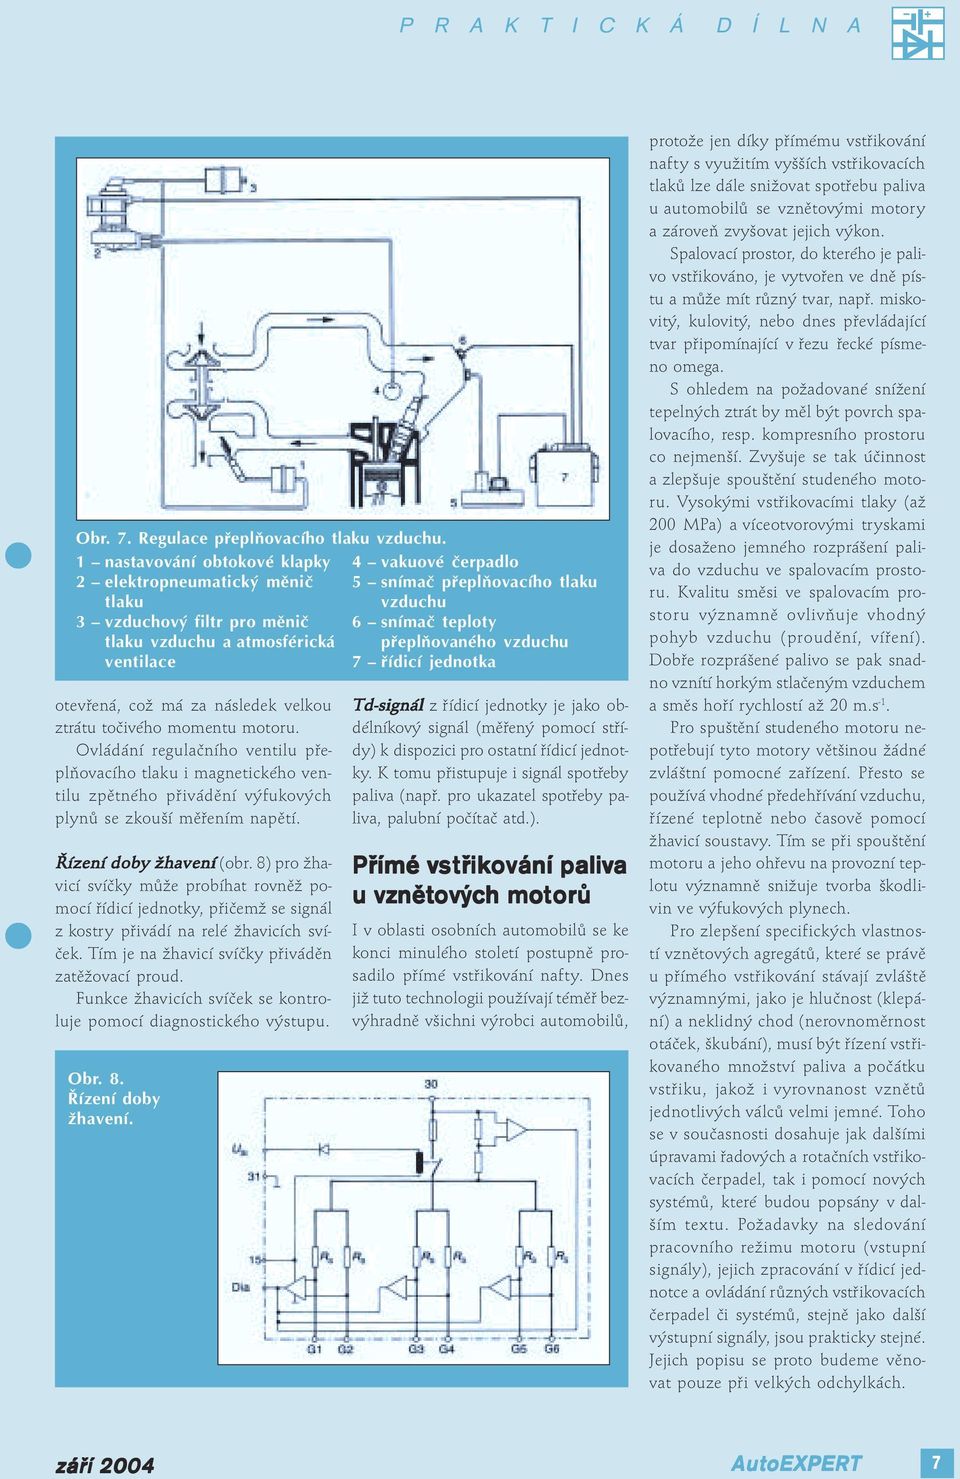 Ovládání regulačního ventilu přeplňovacího tlaku i magnetického ventilu zpětného přivádění výfukových plynů se zkouší měřením napětí. Řízení ení doby y žhavení ení (obr.